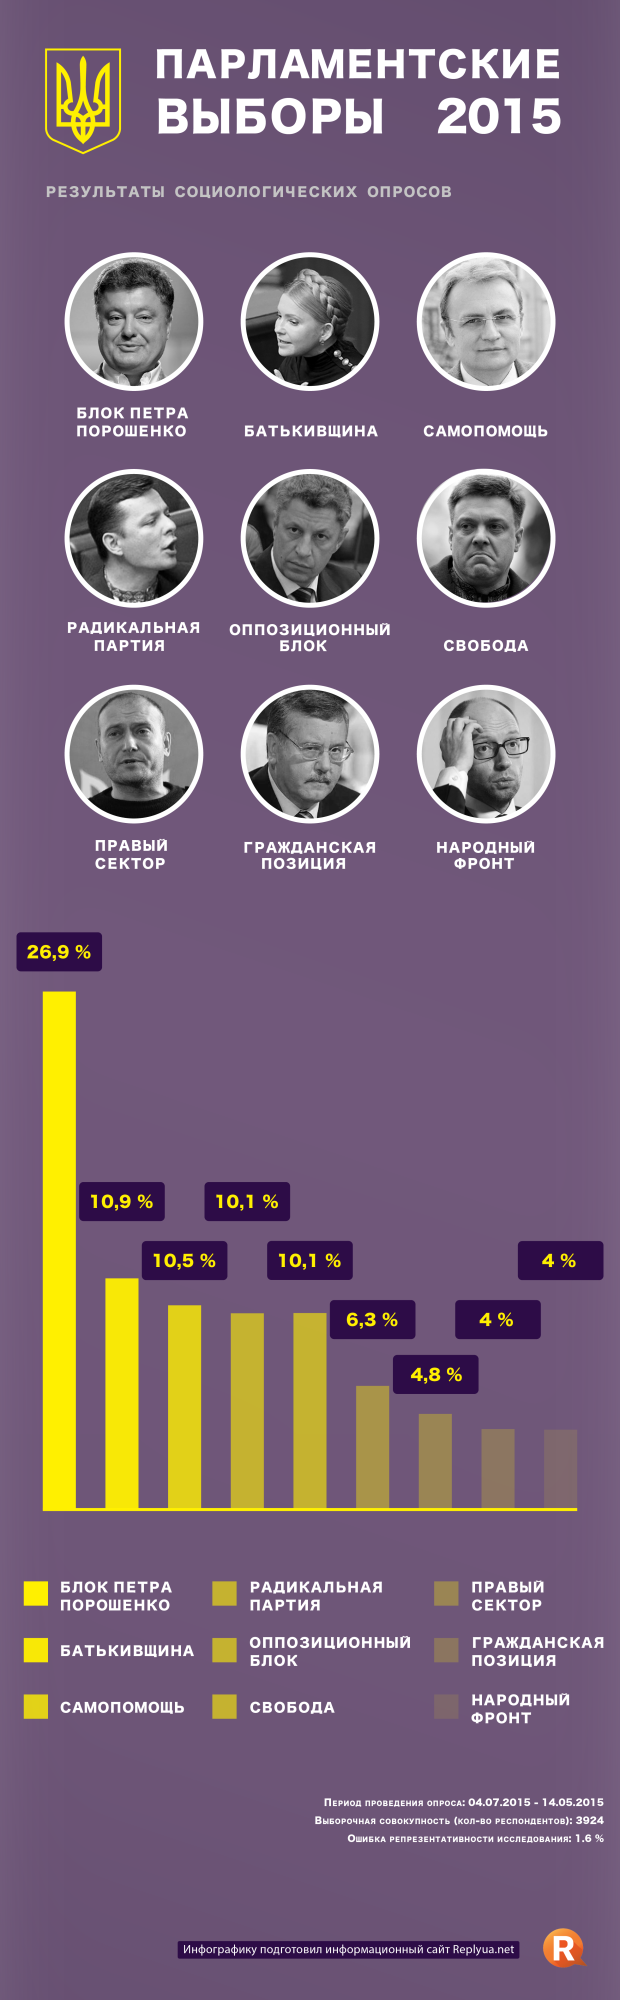 Парламентские выборы 2015 - инфографика